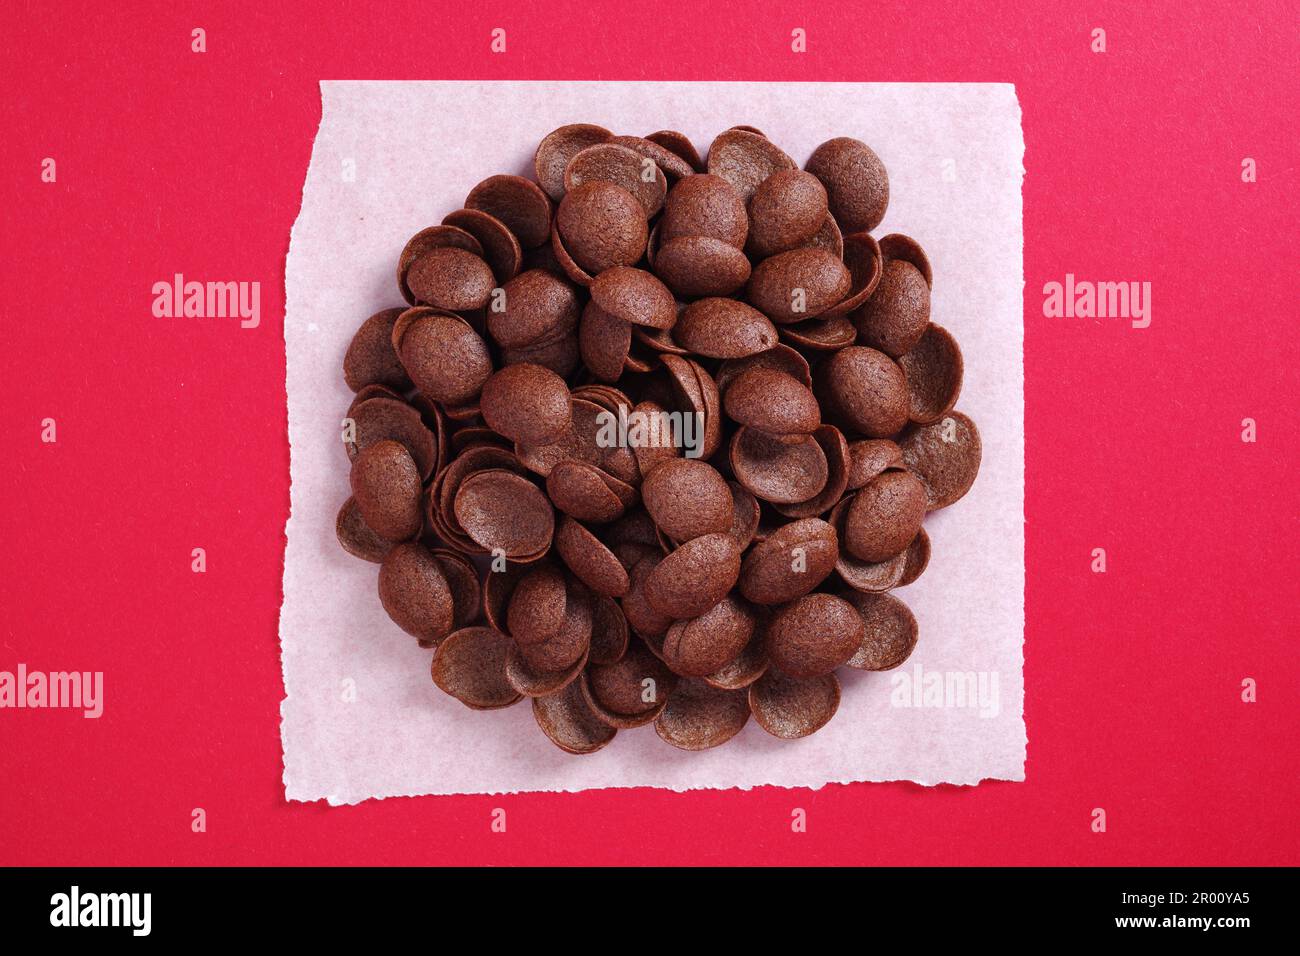 Colazione a base di cereali al cioccolato su sfondo rosso. Conchiglie smaltate. Vista dall'alto Foto Stock